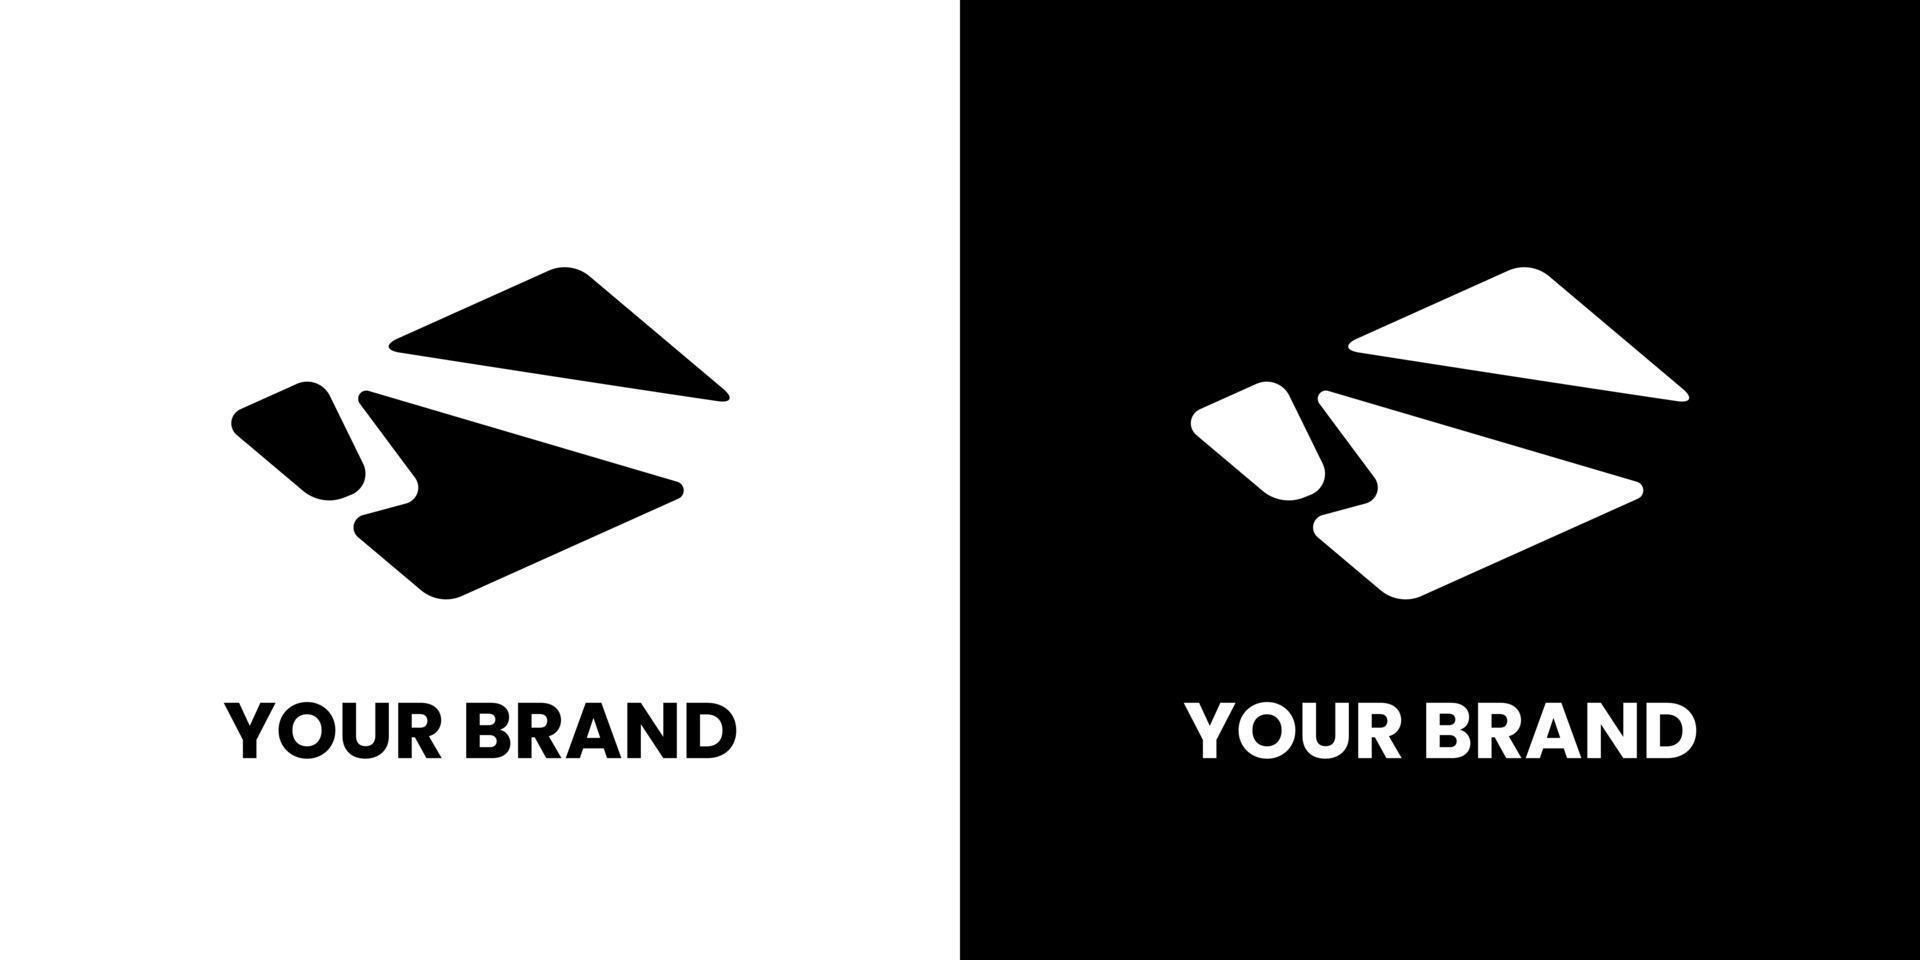 v logotyp för elektronisk varumärke identitet design modern minimalistisk elegant enkel kreativ aning vektor